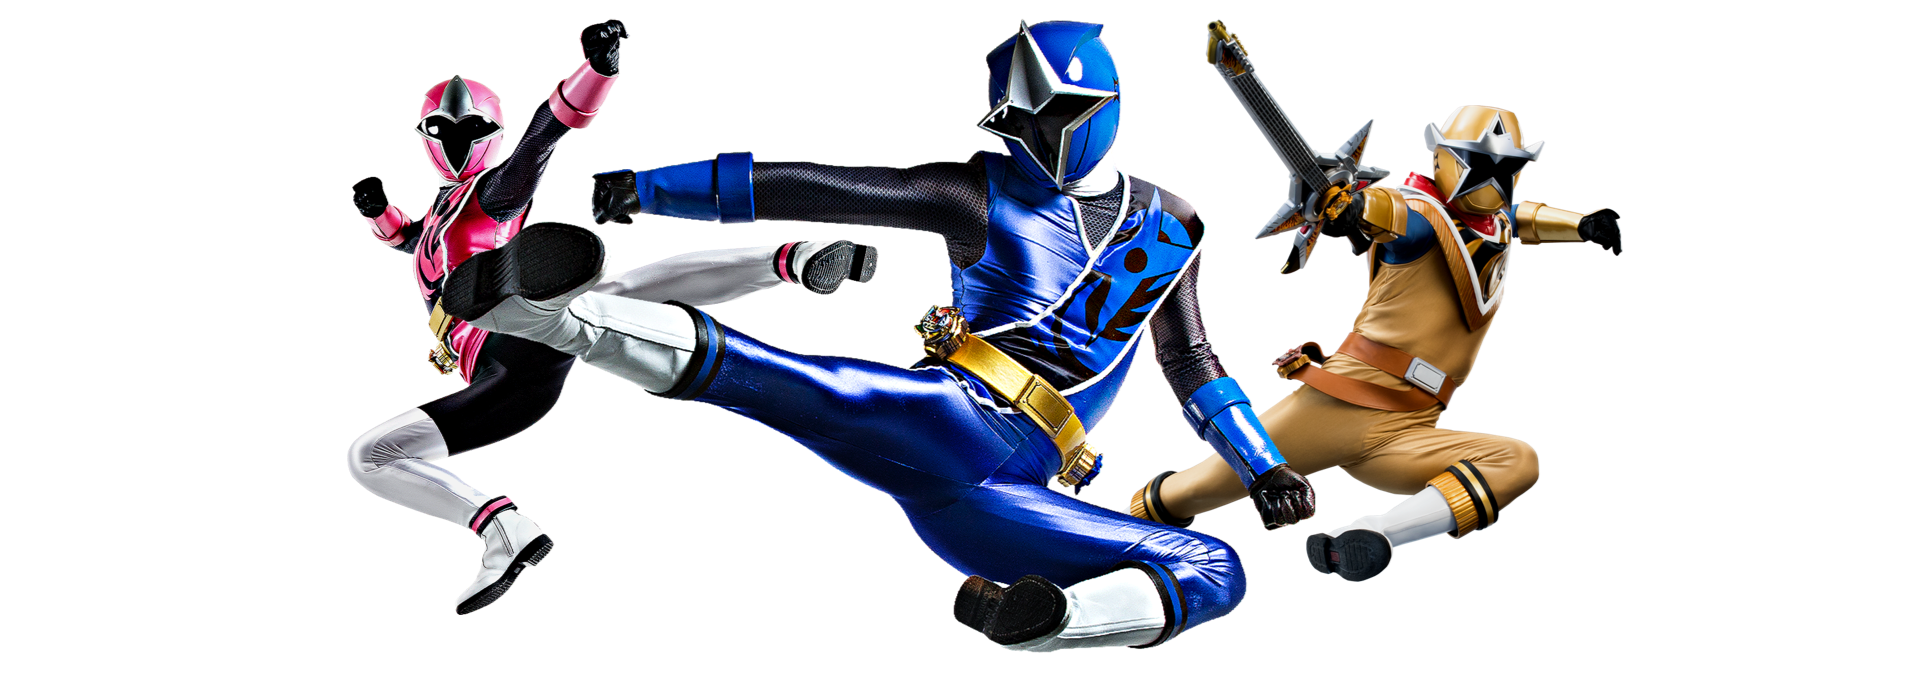 Play Power Rangers Ninja Steel games | Free online Power Rangers Ninja  Steel games | Cartoon Network